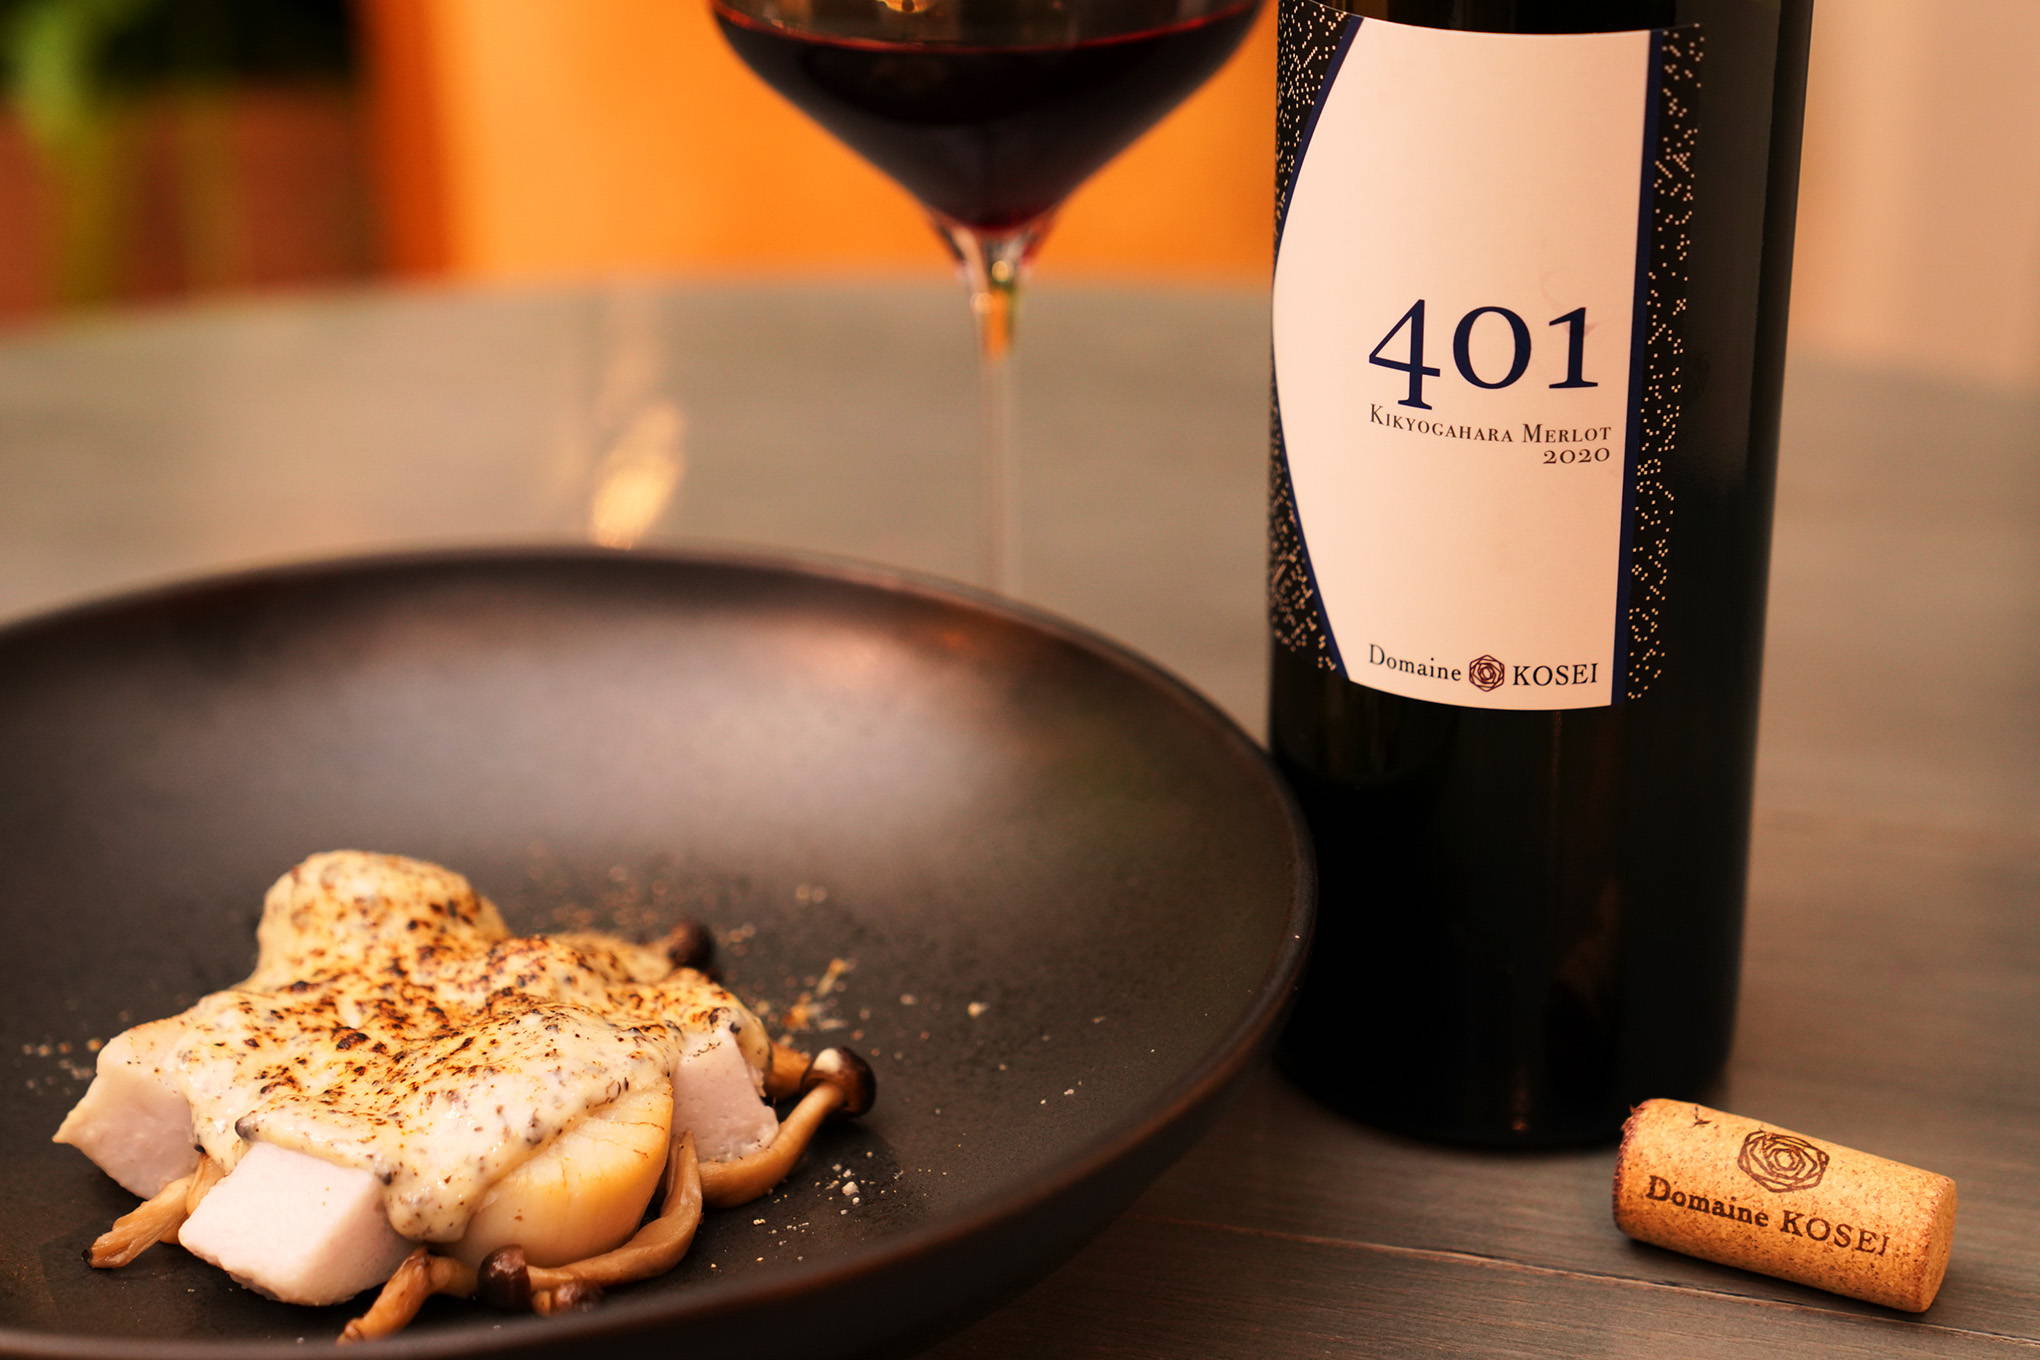 味村氏の哲学が詰まった逸品『メルロ 401 桔梗 2020』。飲みごたえのあるエレガントな赤ワインと合わせたのは意外な食材！